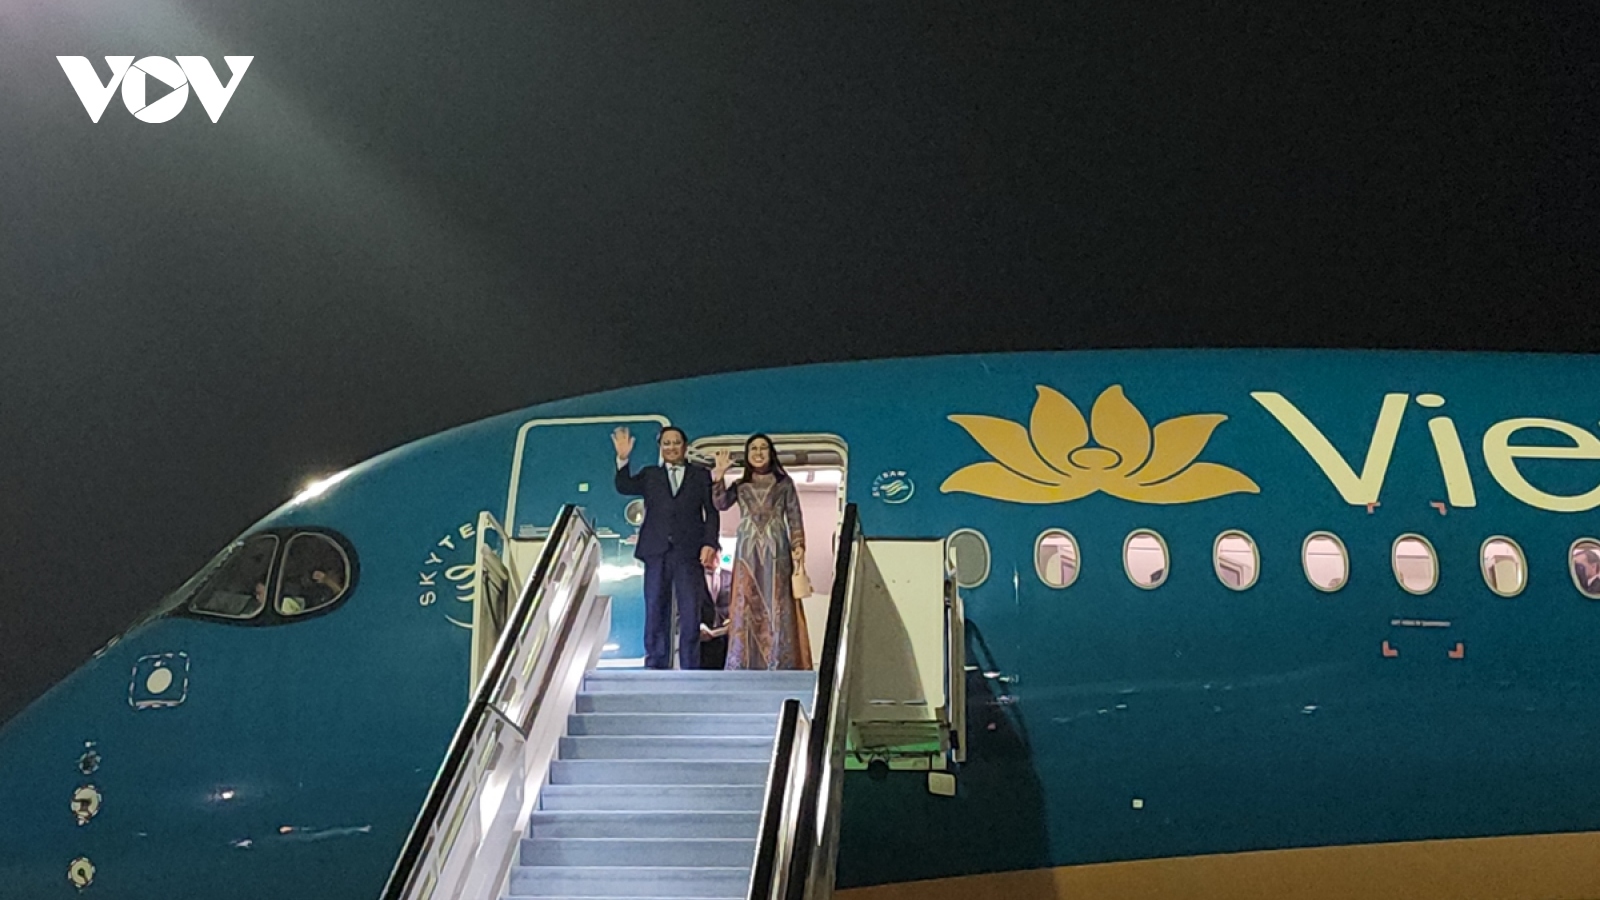 Thủ tướng và Phu nhân đến Dubai bắt đầu chuyến công tác tham dự Hội nghị COP28